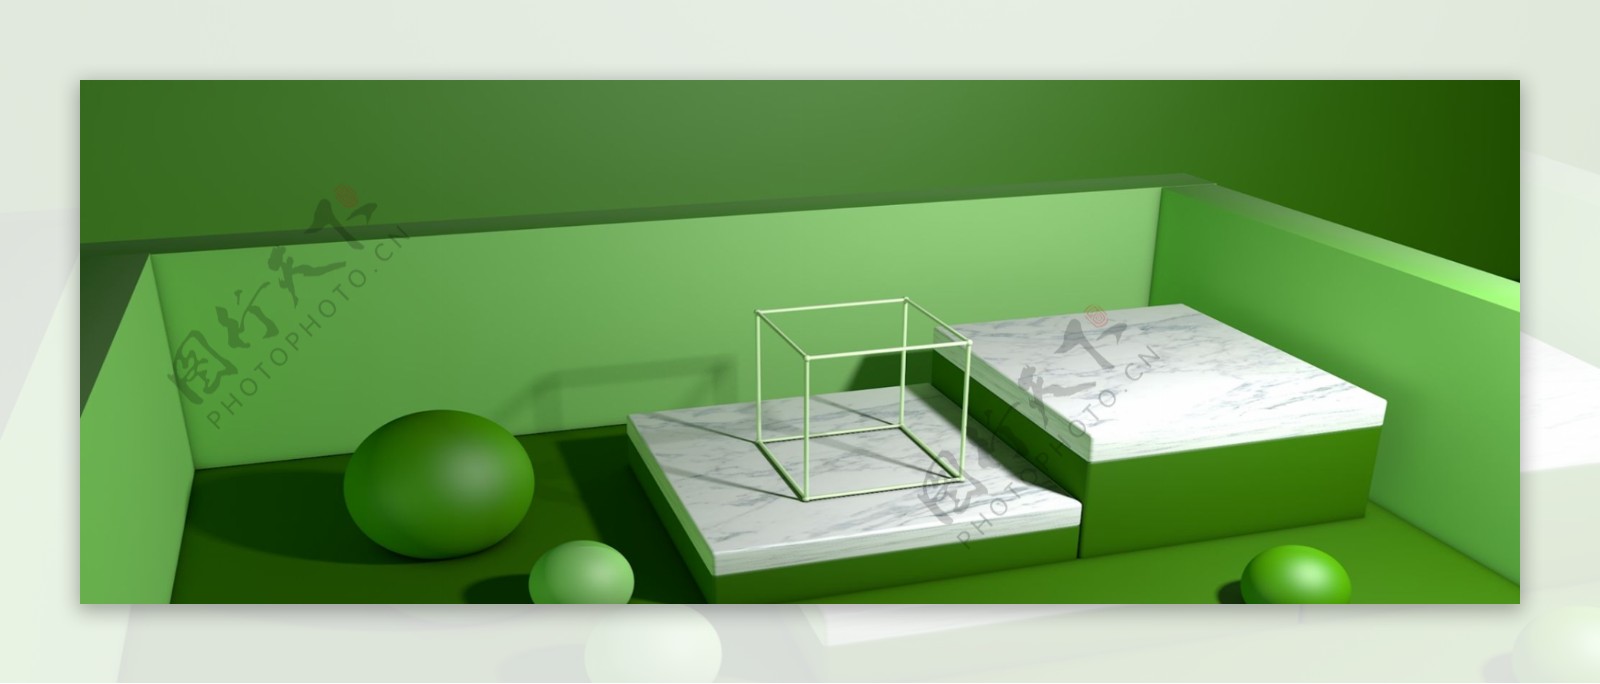 绿色微立体燕窝立体展台背景素材